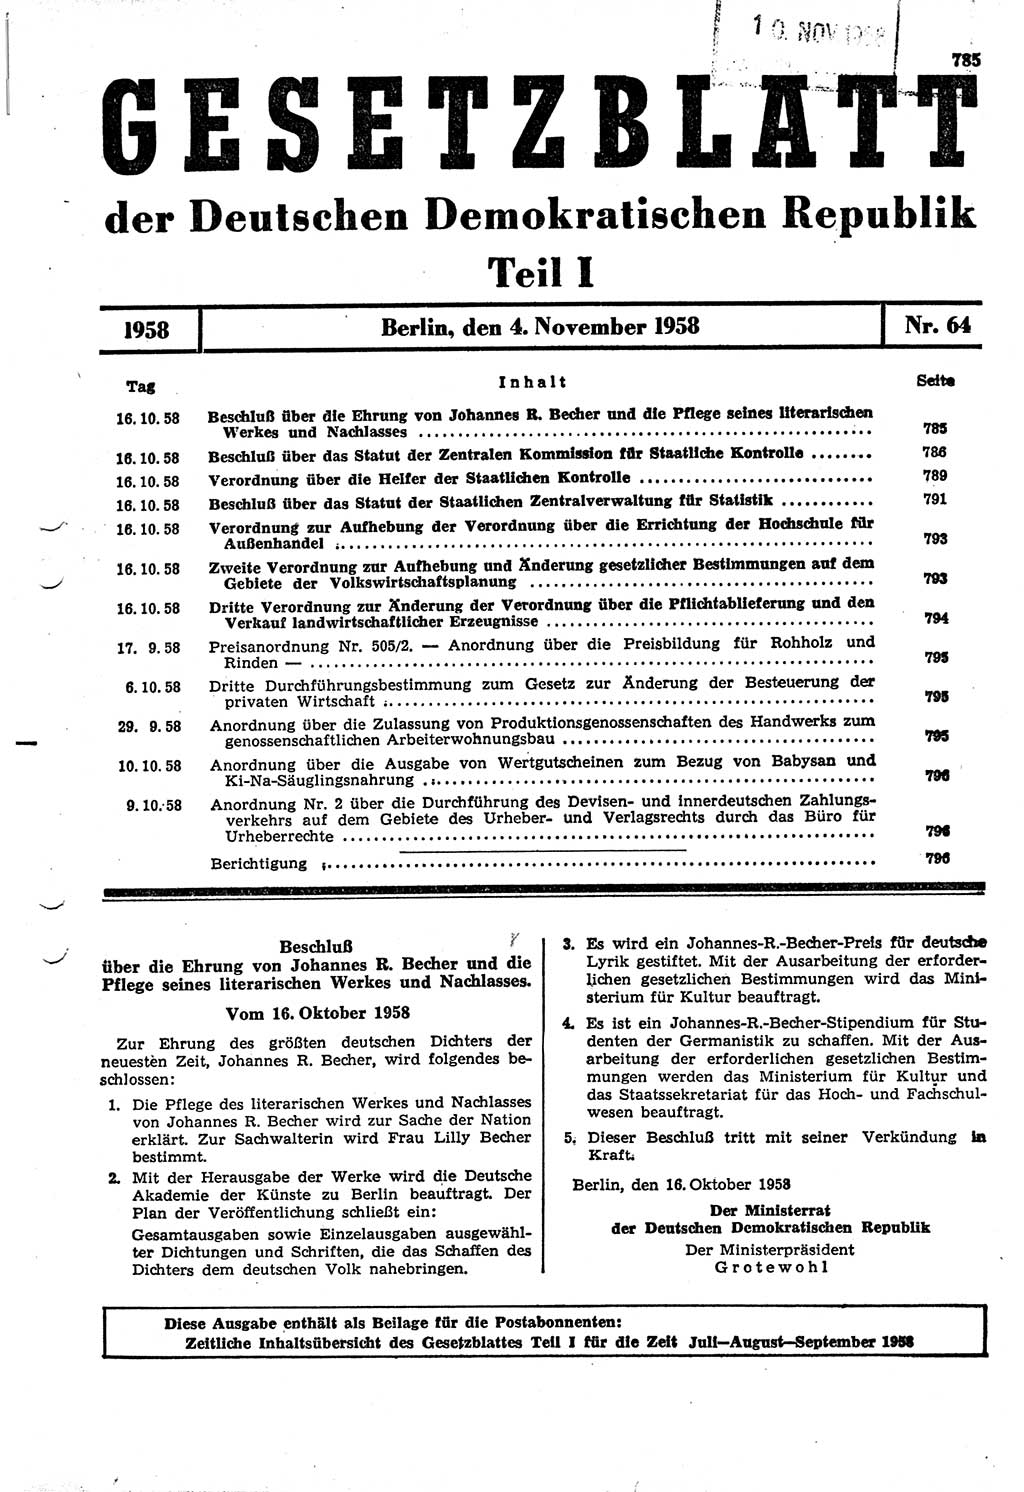 Gesetzblatt (GBl.) der Deutschen Demokratischen Republik (DDR) Teil Ⅰ 1958, Seite 785 (GBl. DDR Ⅰ 1958, S. 785)